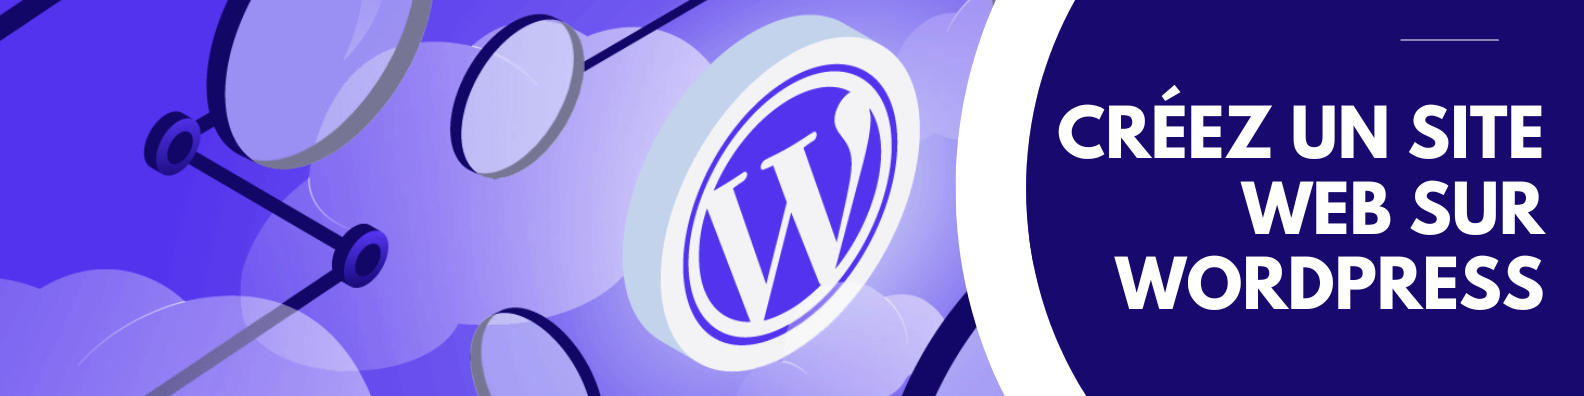 Créez un site web sur WordPress